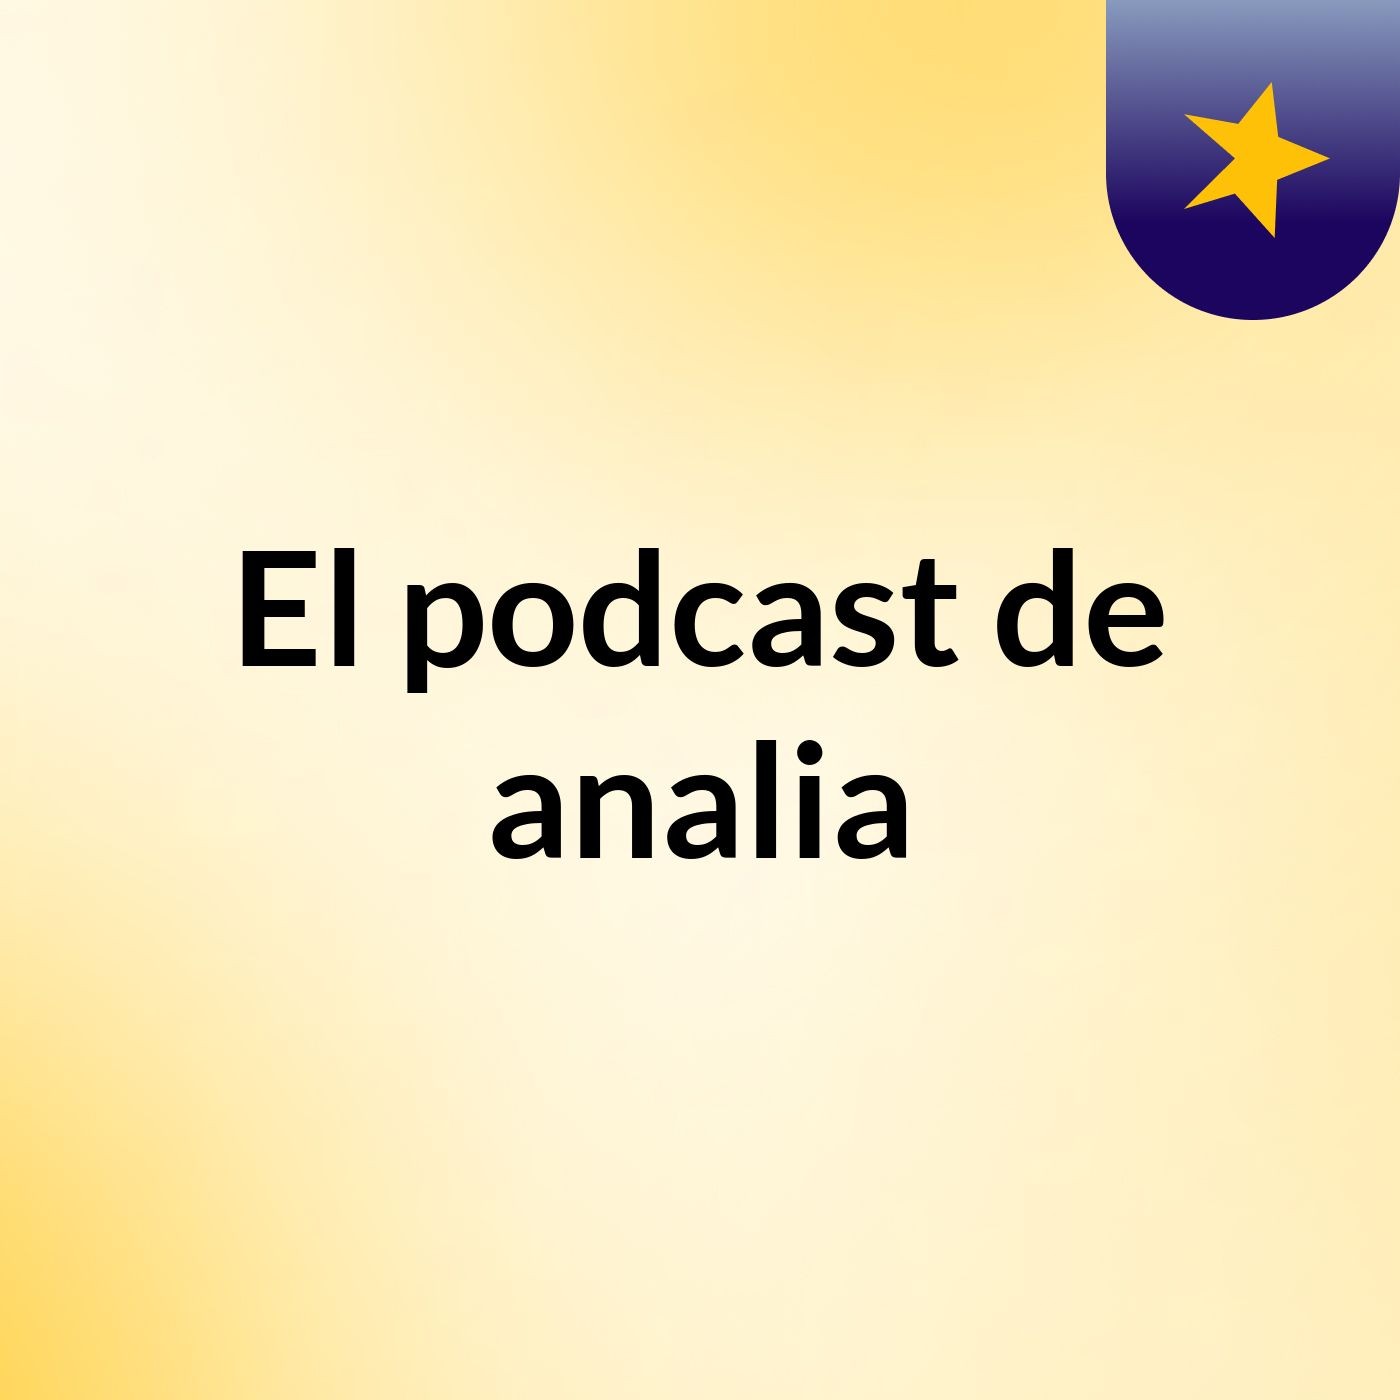 El podcast de analia